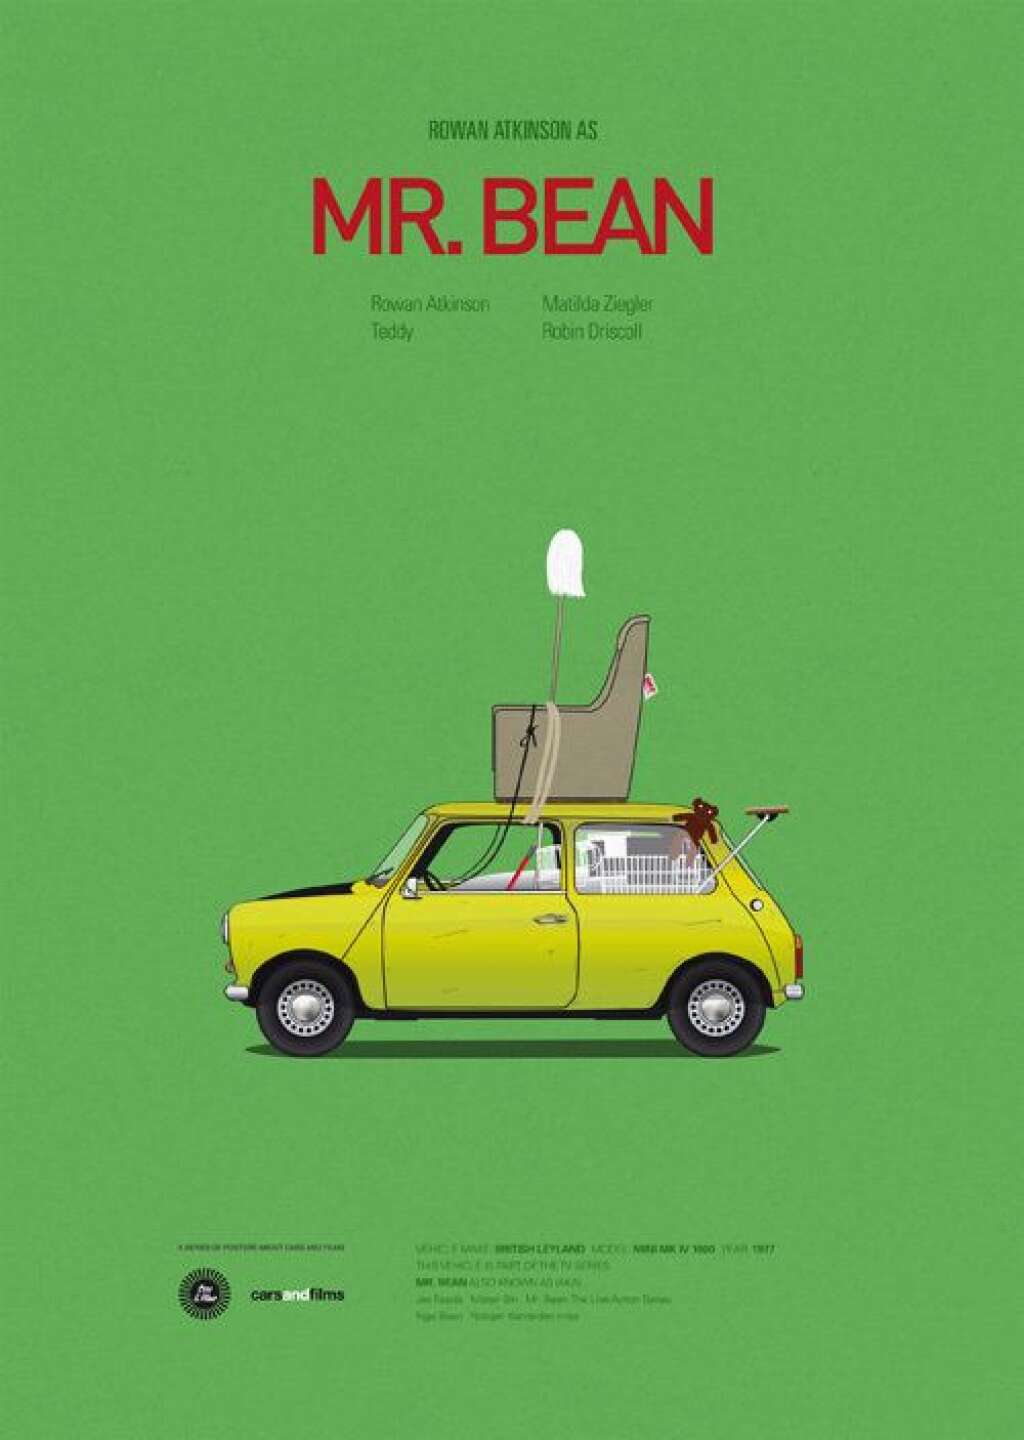 La Mini Cooper de "Mister Bean" -